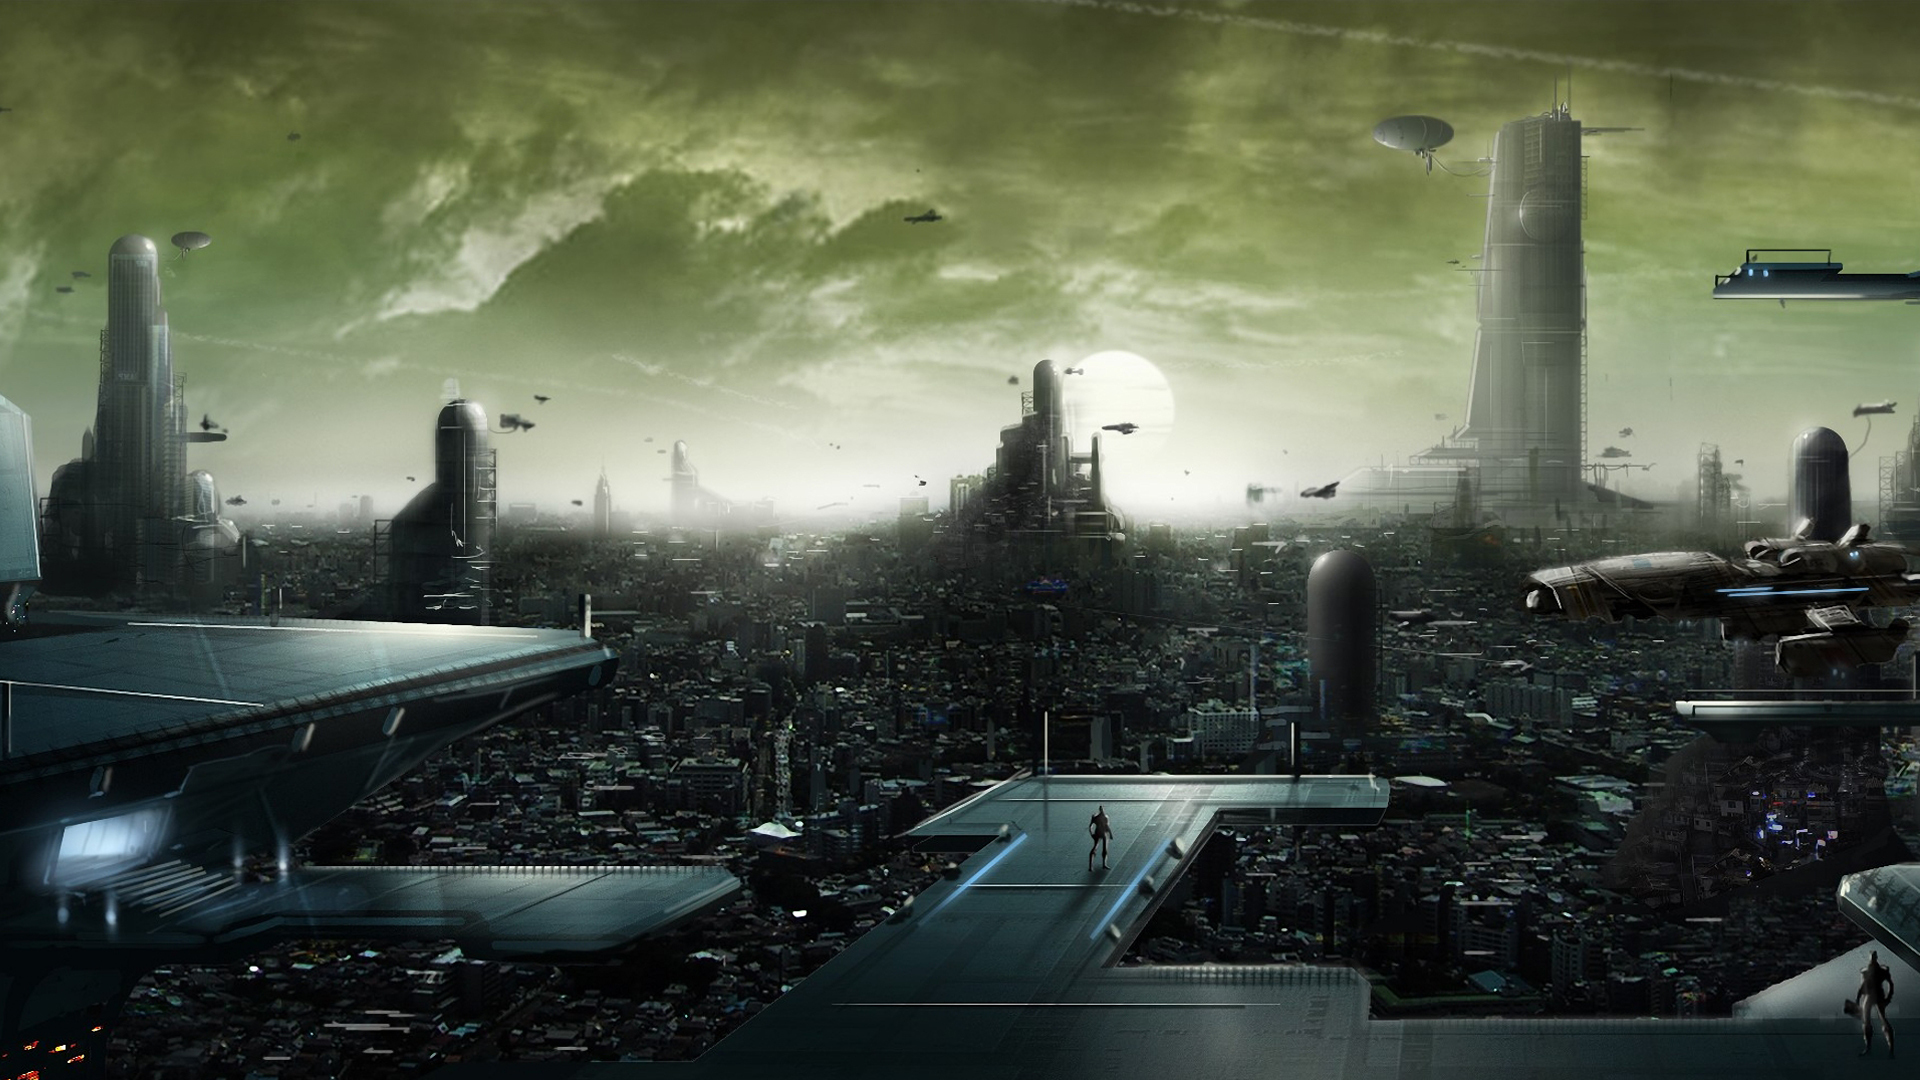 Sci Fi Future City - 1920x1080 Wallpaper 